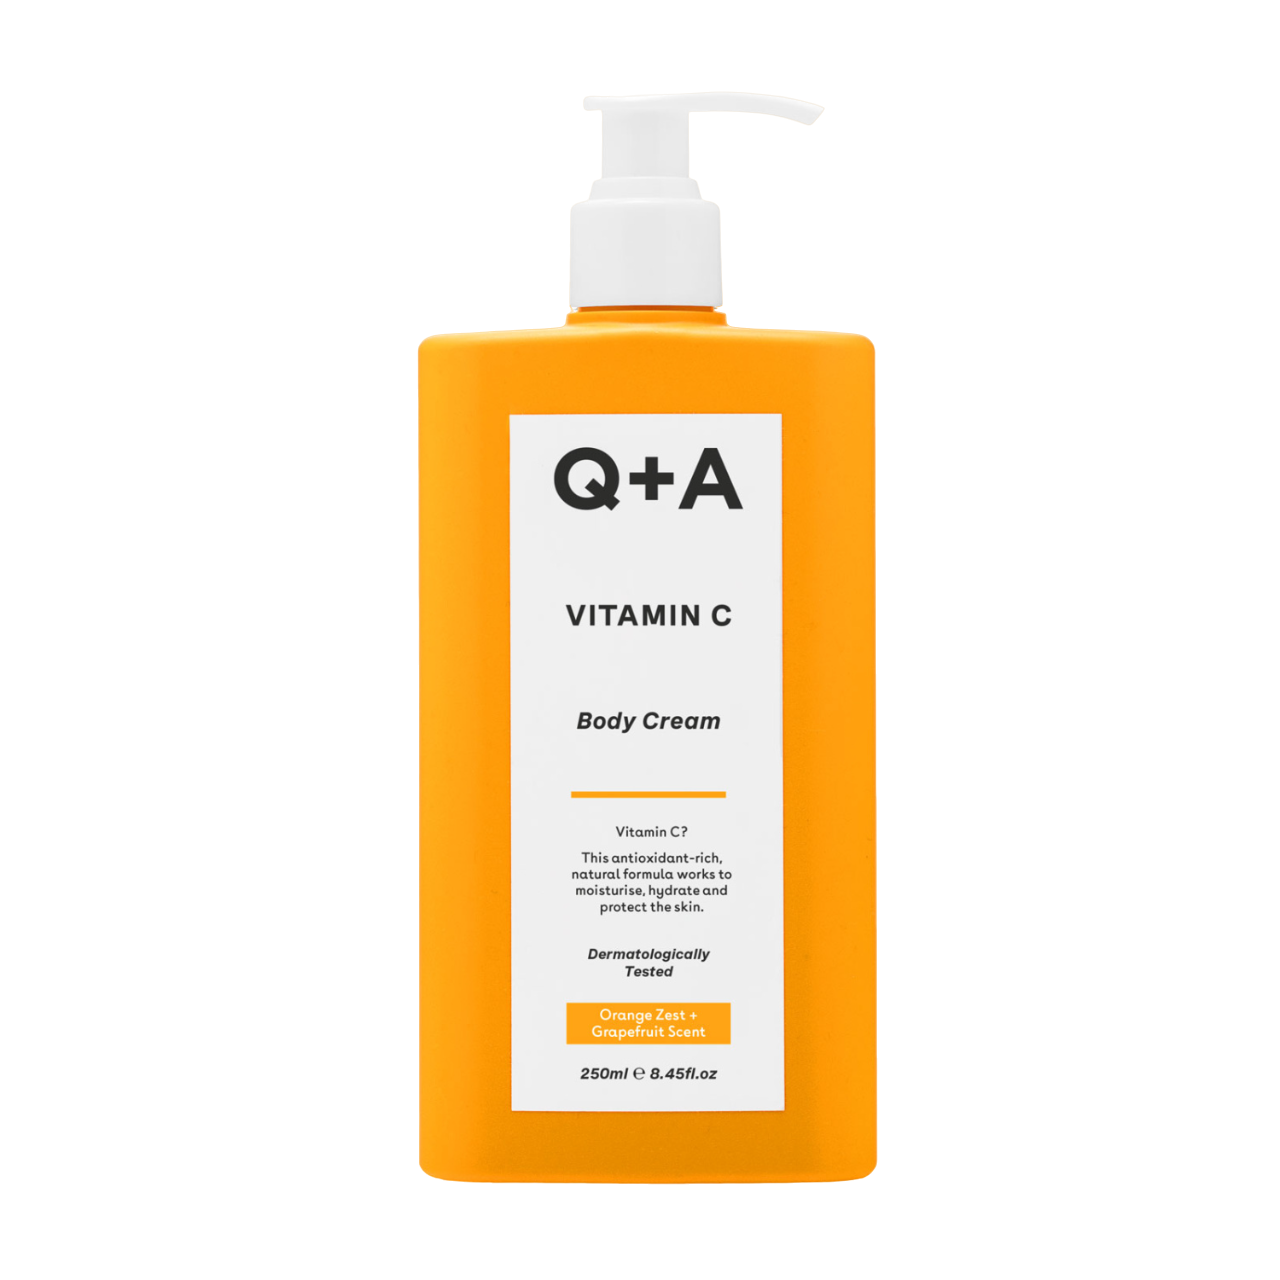 Q+A Vitamin C Body Cream 250ml - интернет-магазин профессиональной косметики Spadream, изображение 51684